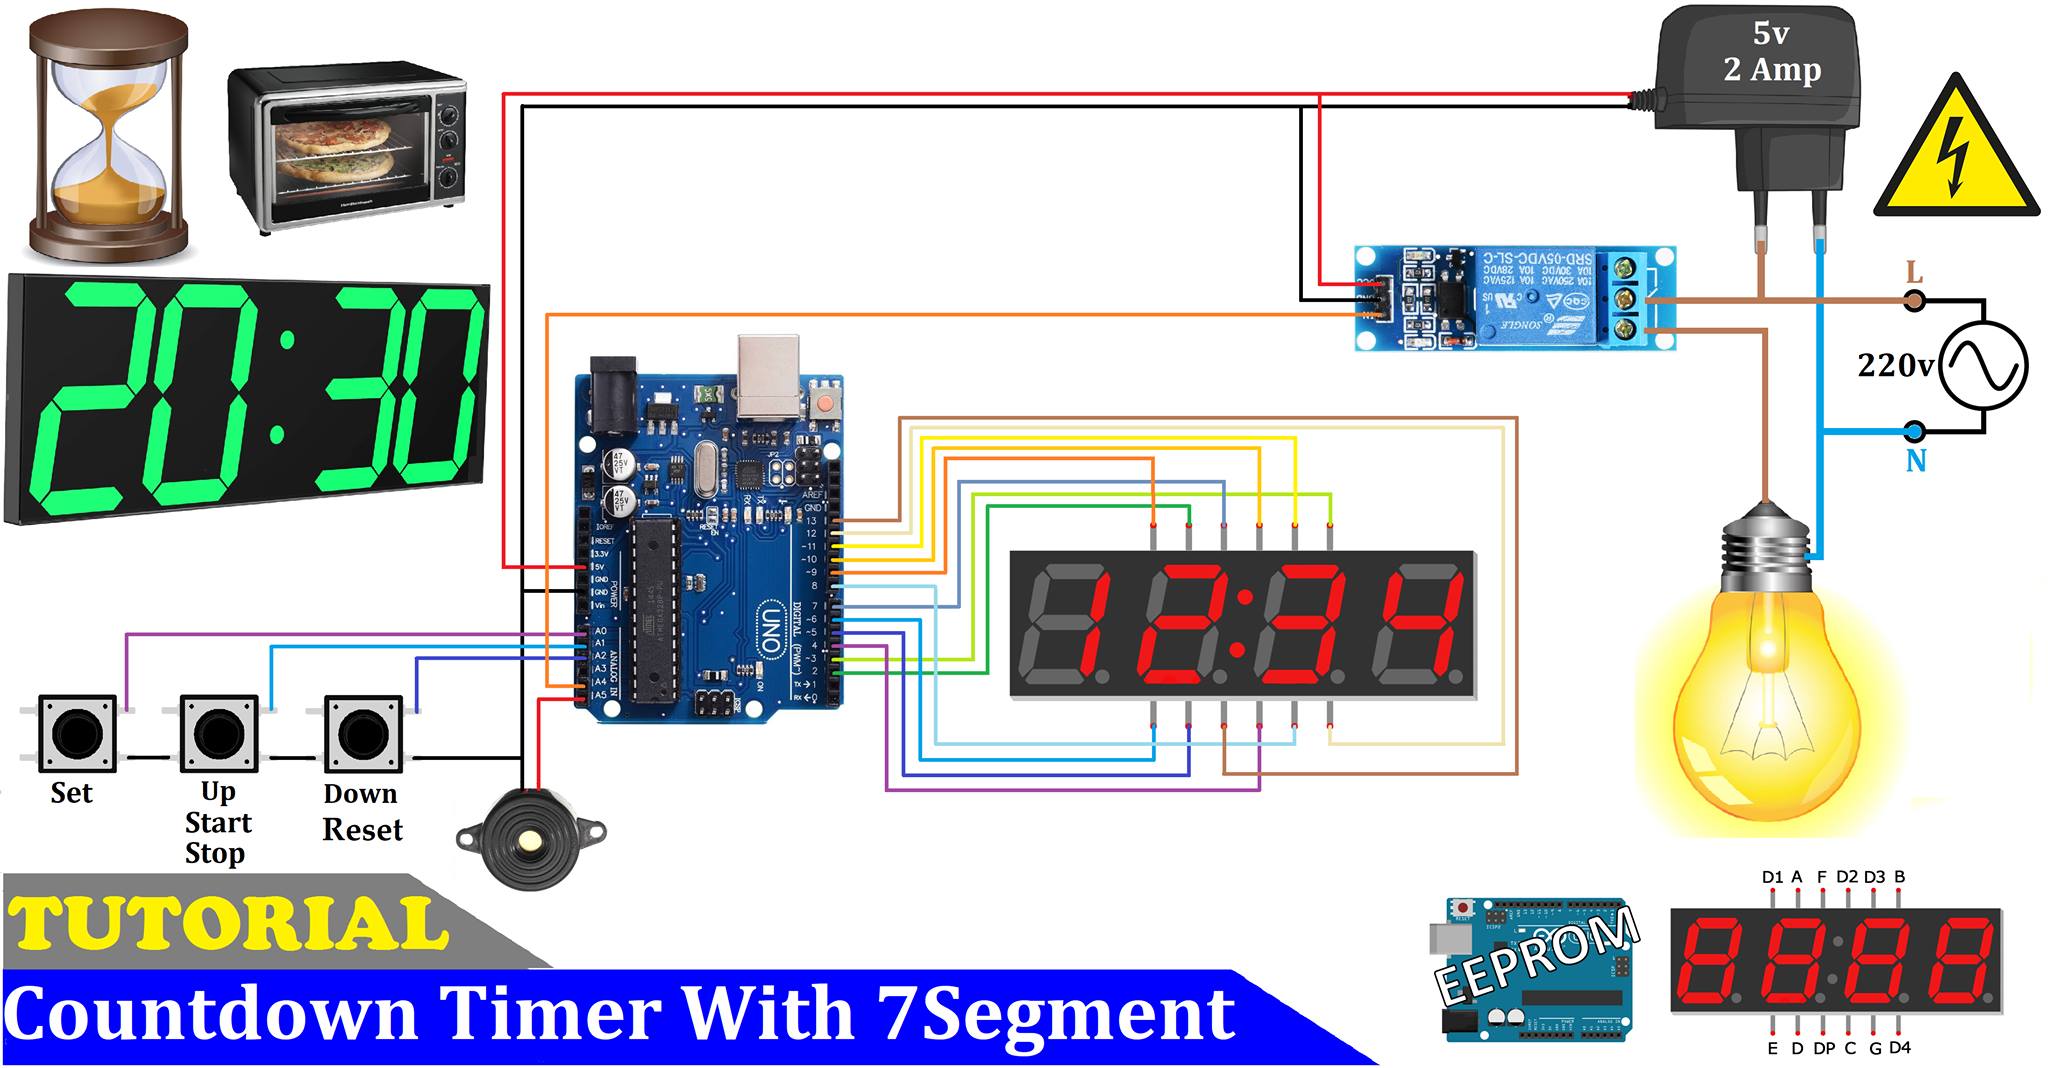 Number Timer - 4-Digit Countdown Display